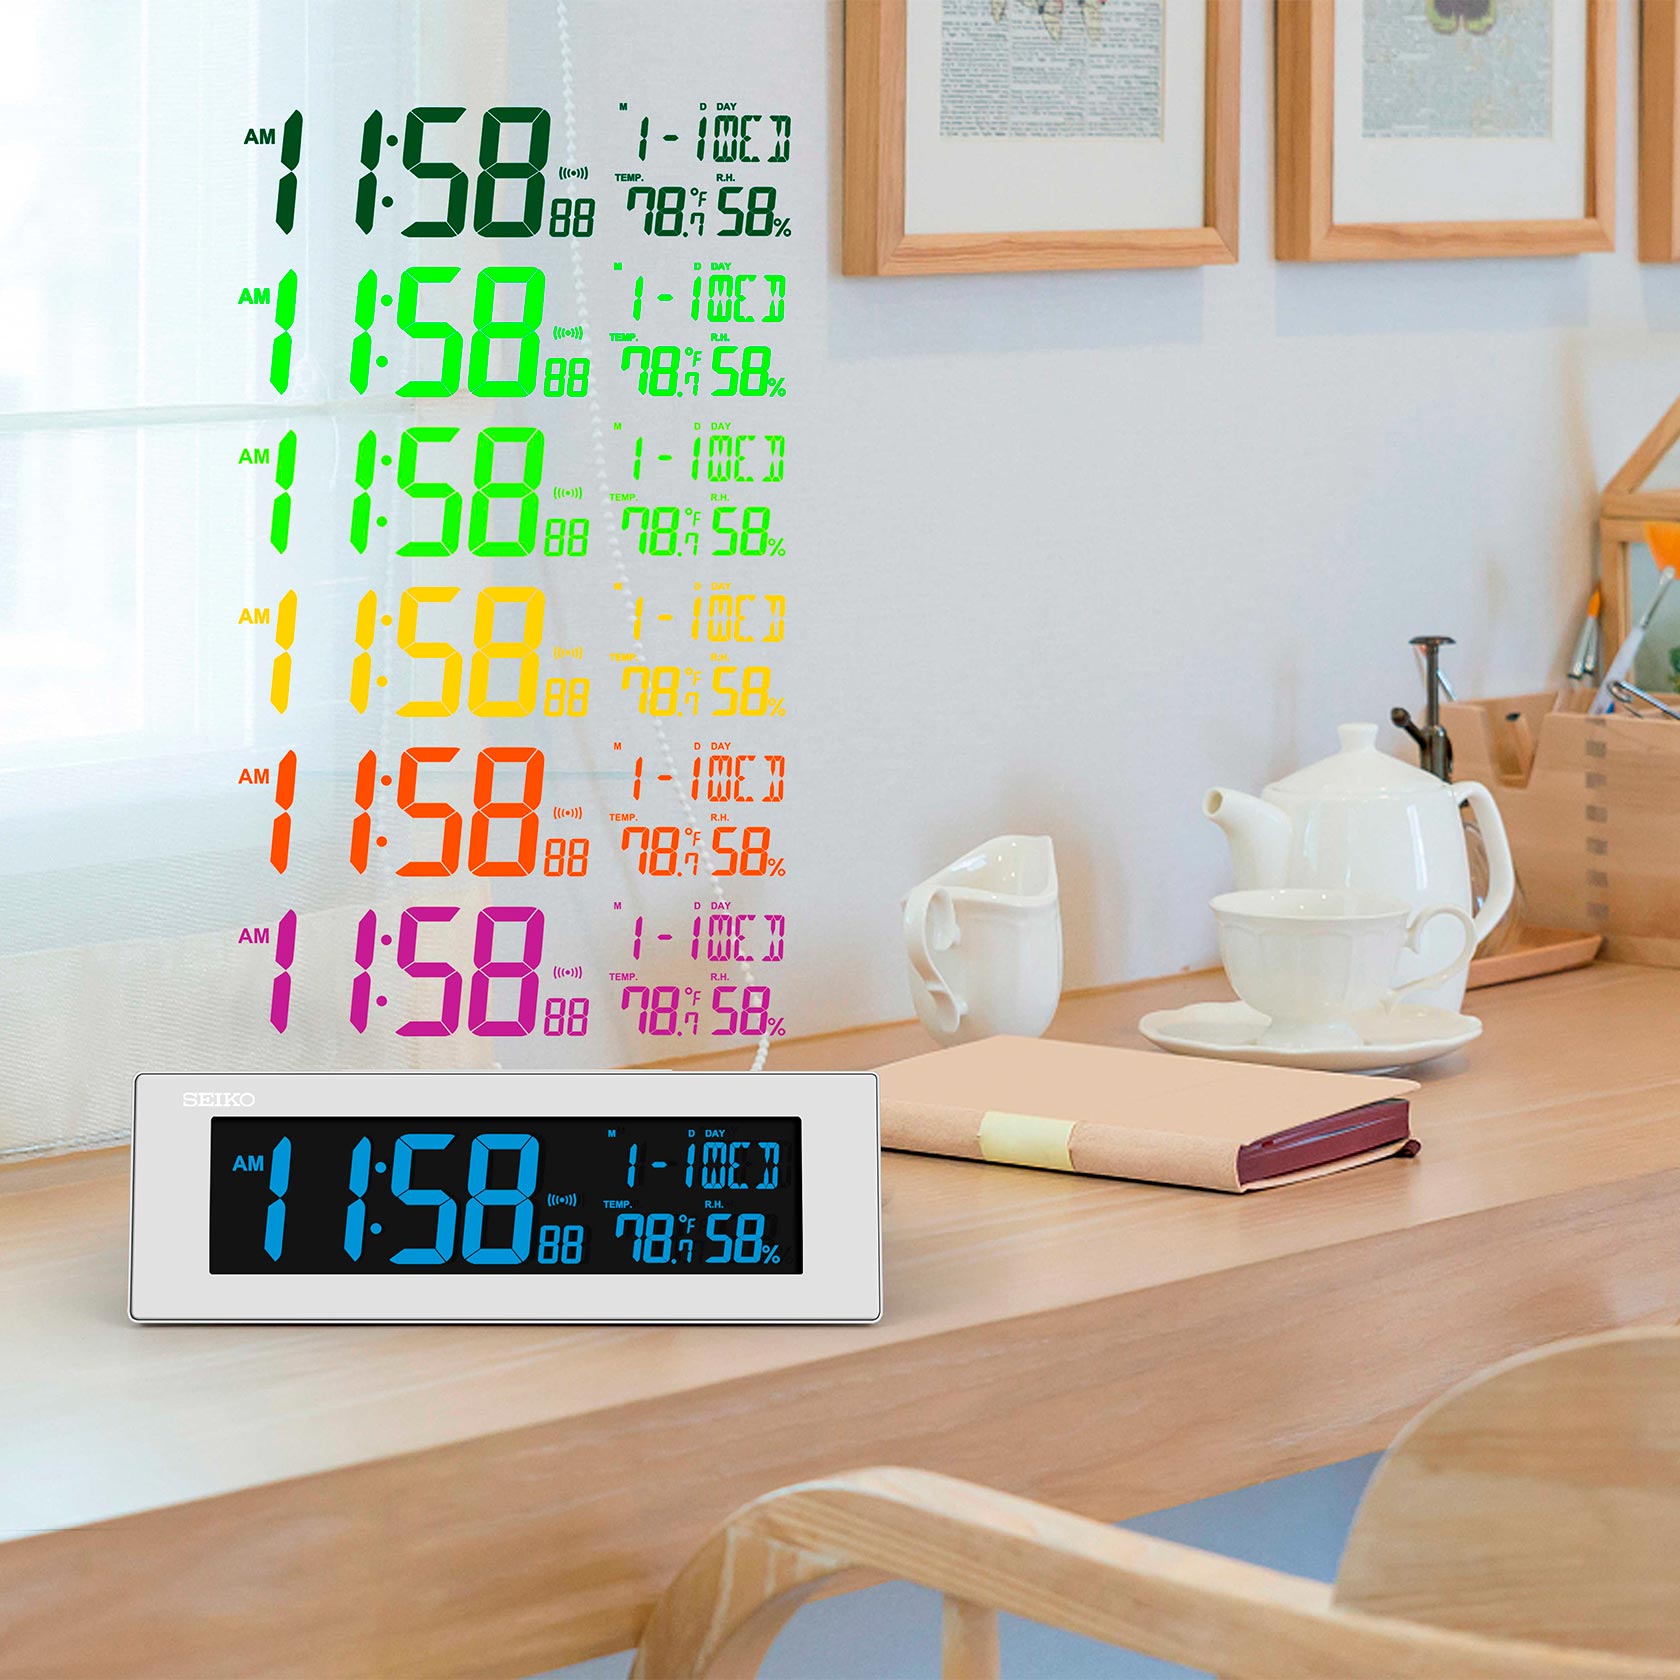 Reloj Despertador Digital con Calendario Temperatura - UNISEX UNIVERSAL